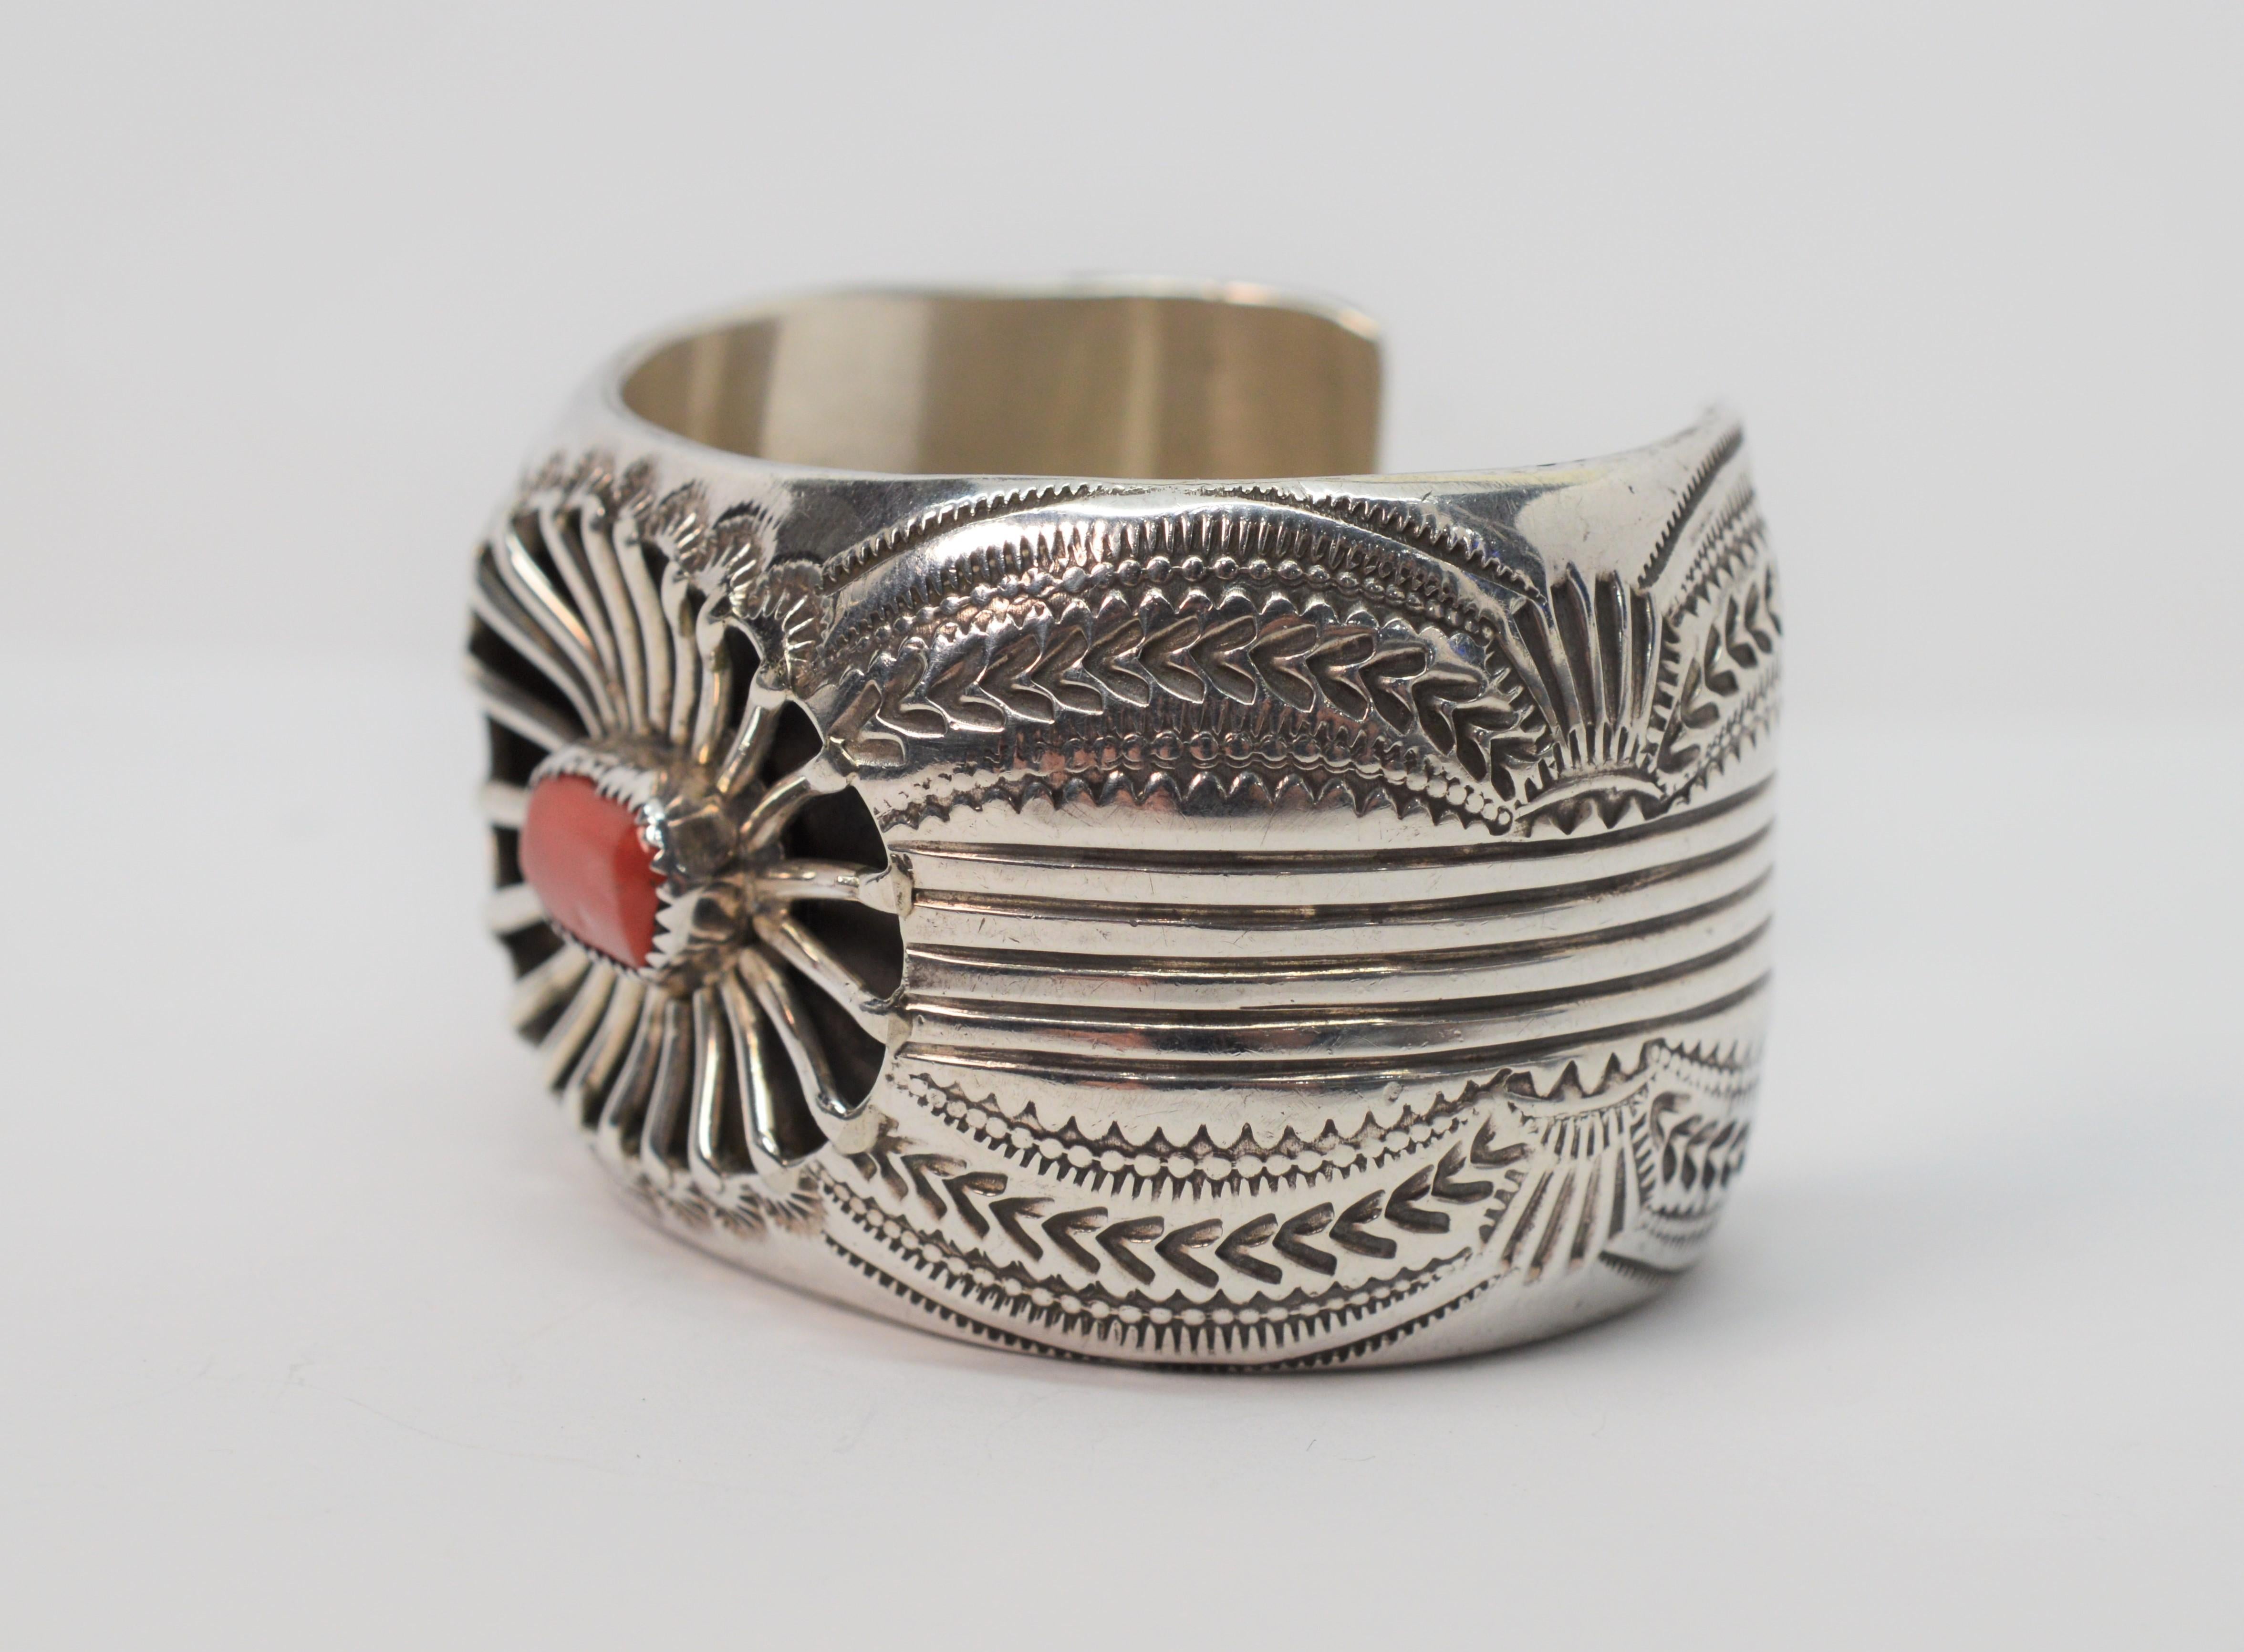 Finement réalisé, ce bracelet de style amérindien est l'œuvre du célèbre orfèvre navajo Wilbert Benally. Ce bracelet substantiel et délicieusement détaillé, d'une largeur d'environ 1,5 pouce, est gravé à la main d'un motif tribal qui complète la